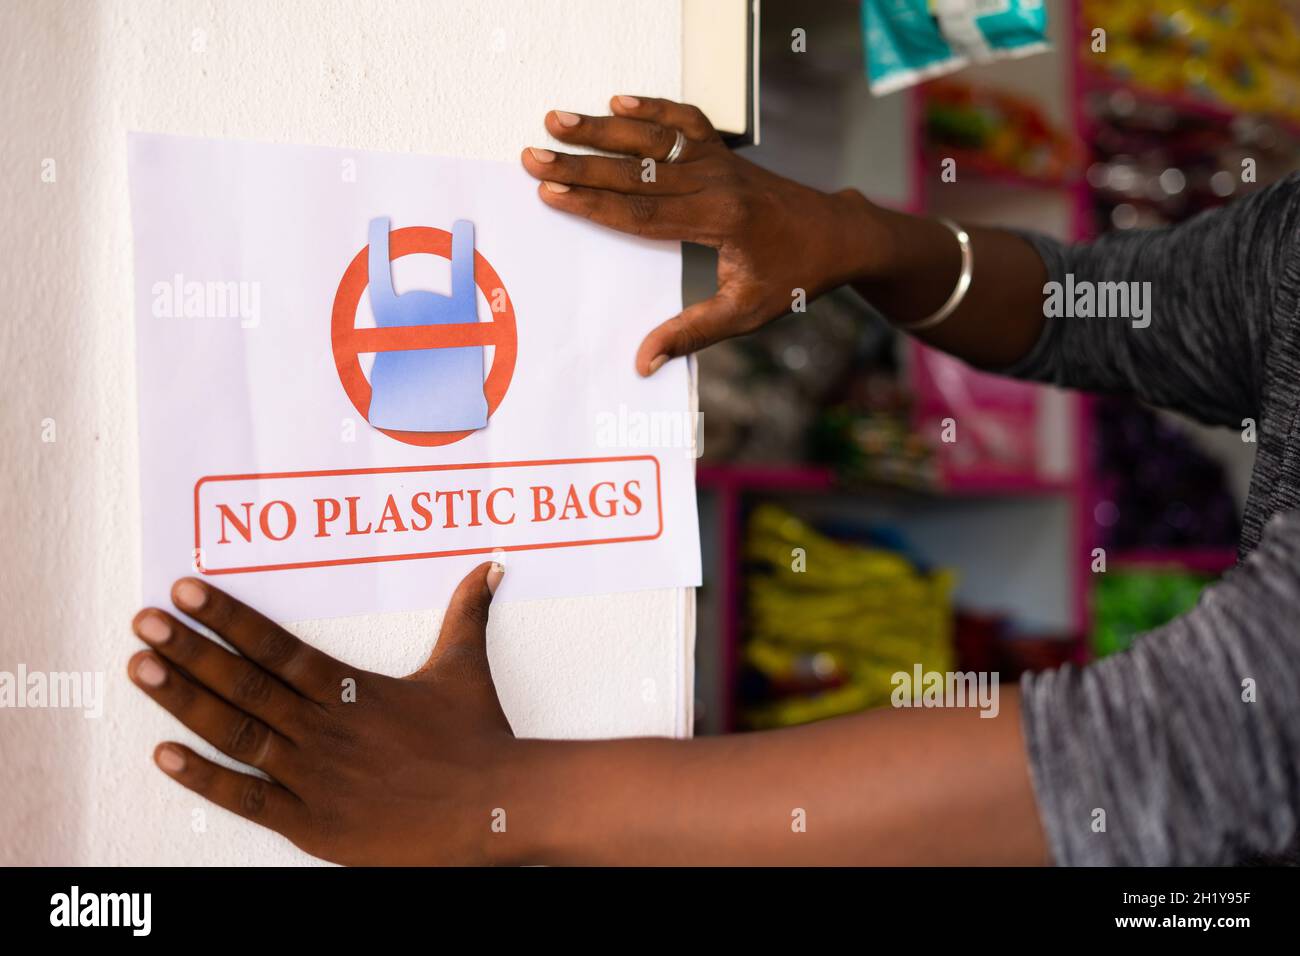 primo piano dell'irriconoscibile negoziante che incolla nessun avviso di sacchetto di plastica sulla parete - concetto per ridurre la poluzione e l'uso di plastica nei negozi al dettaglio. Foto Stock